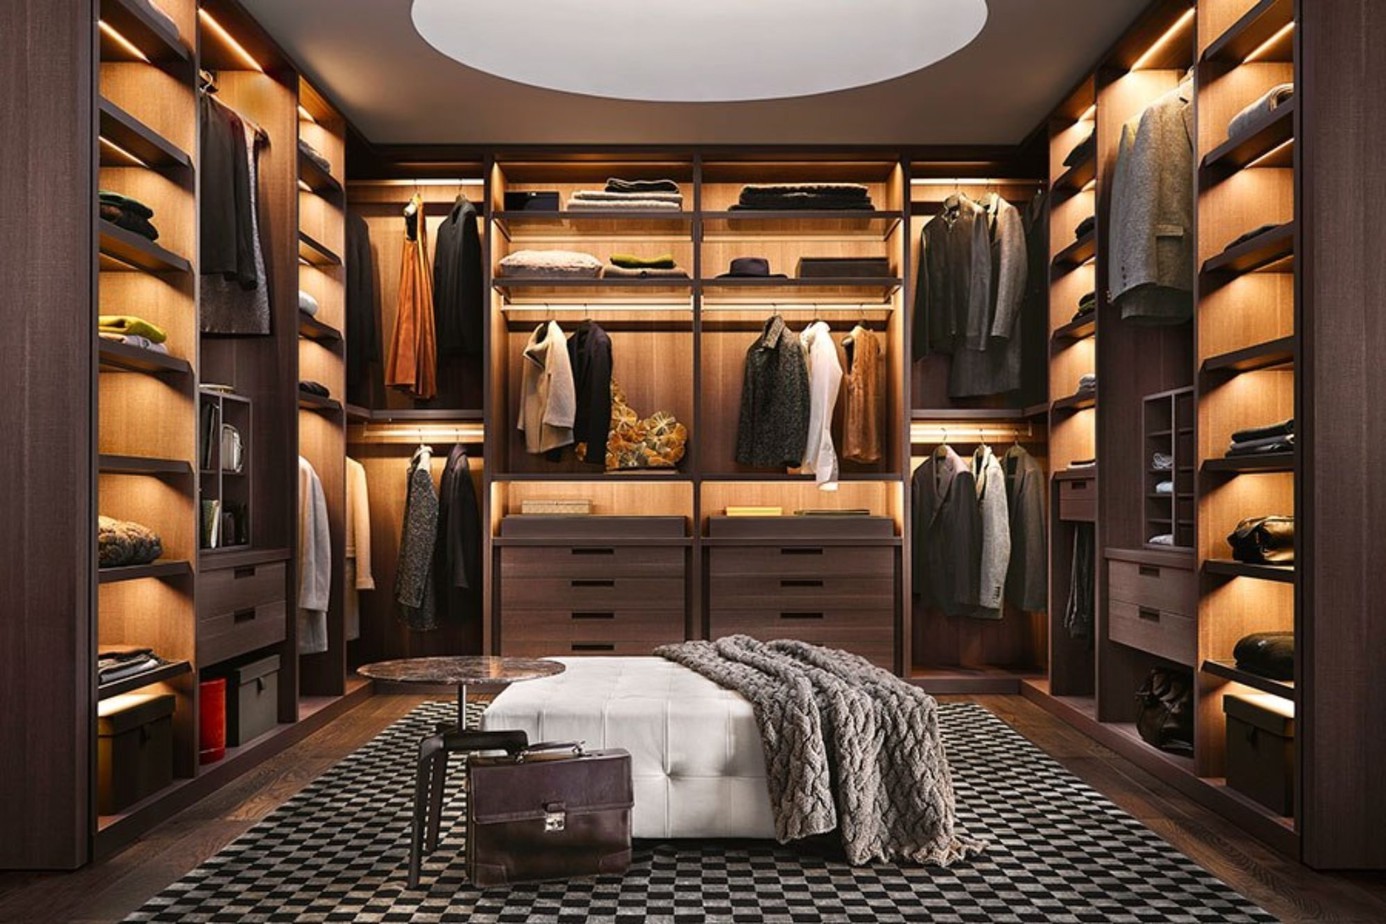 Dường như căn phòng của bạn trở thành một shop thời trang sang trọng nhờ thiết kế tủ chữ U màu vân gỗ độc đáo. Các ngăn chứa cũng được thiết kế và sắp xếp một cách tài tình mang đến sự hòa hợp hoàn mỹ.